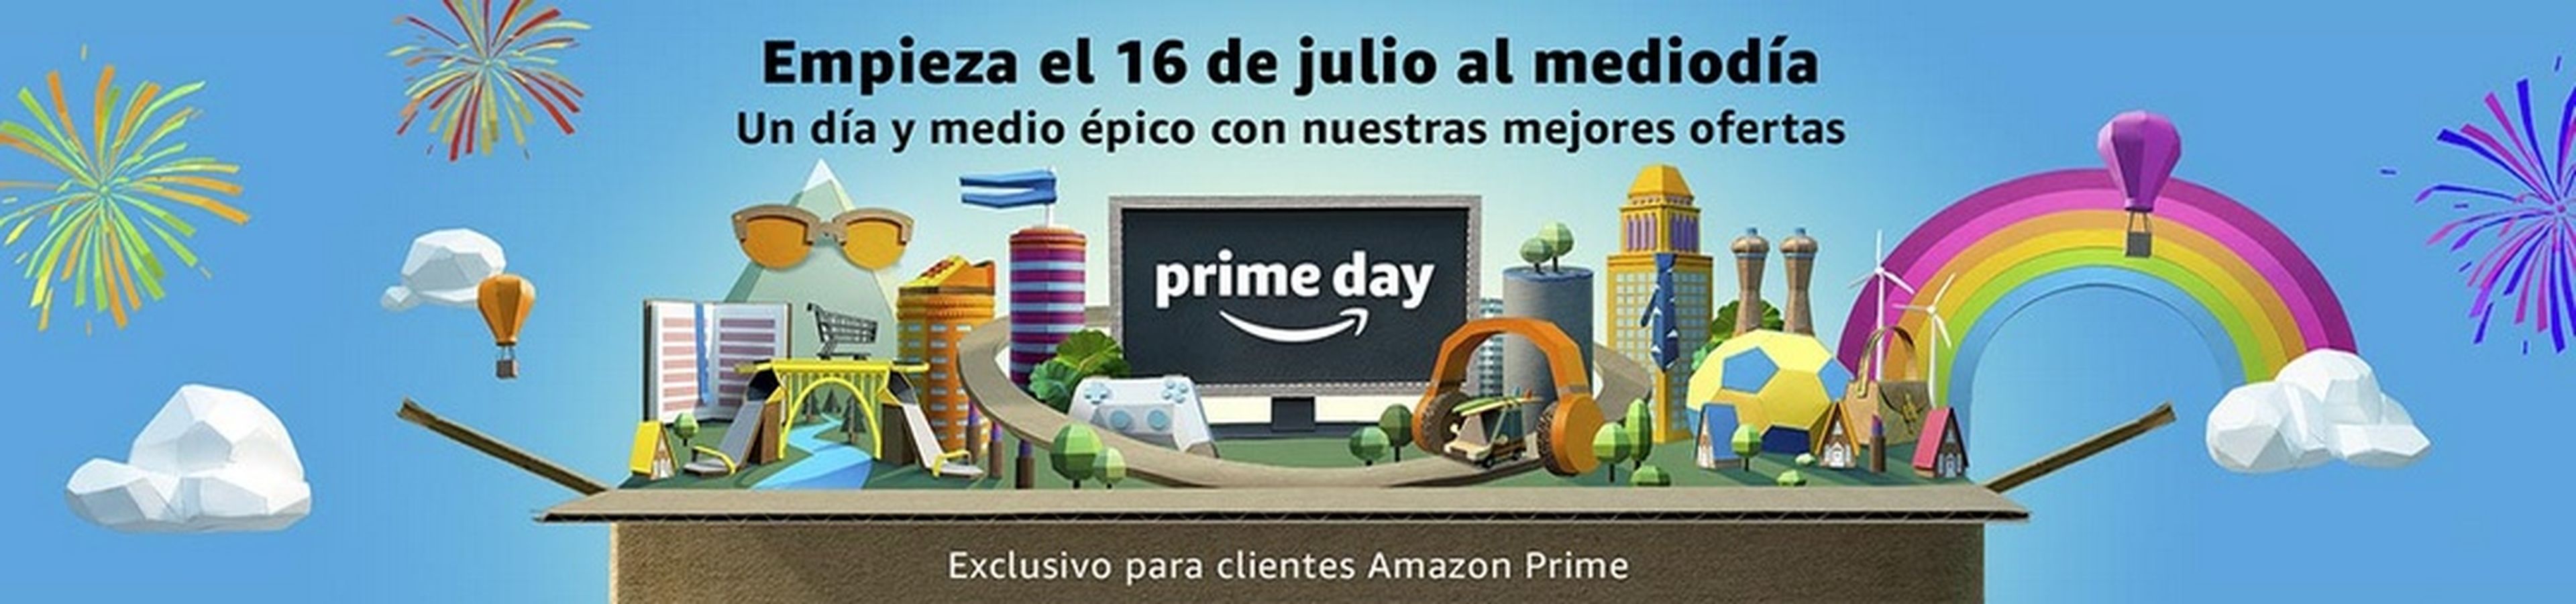 Trucos para comprar más barato en el Amazon Prime Day 2018